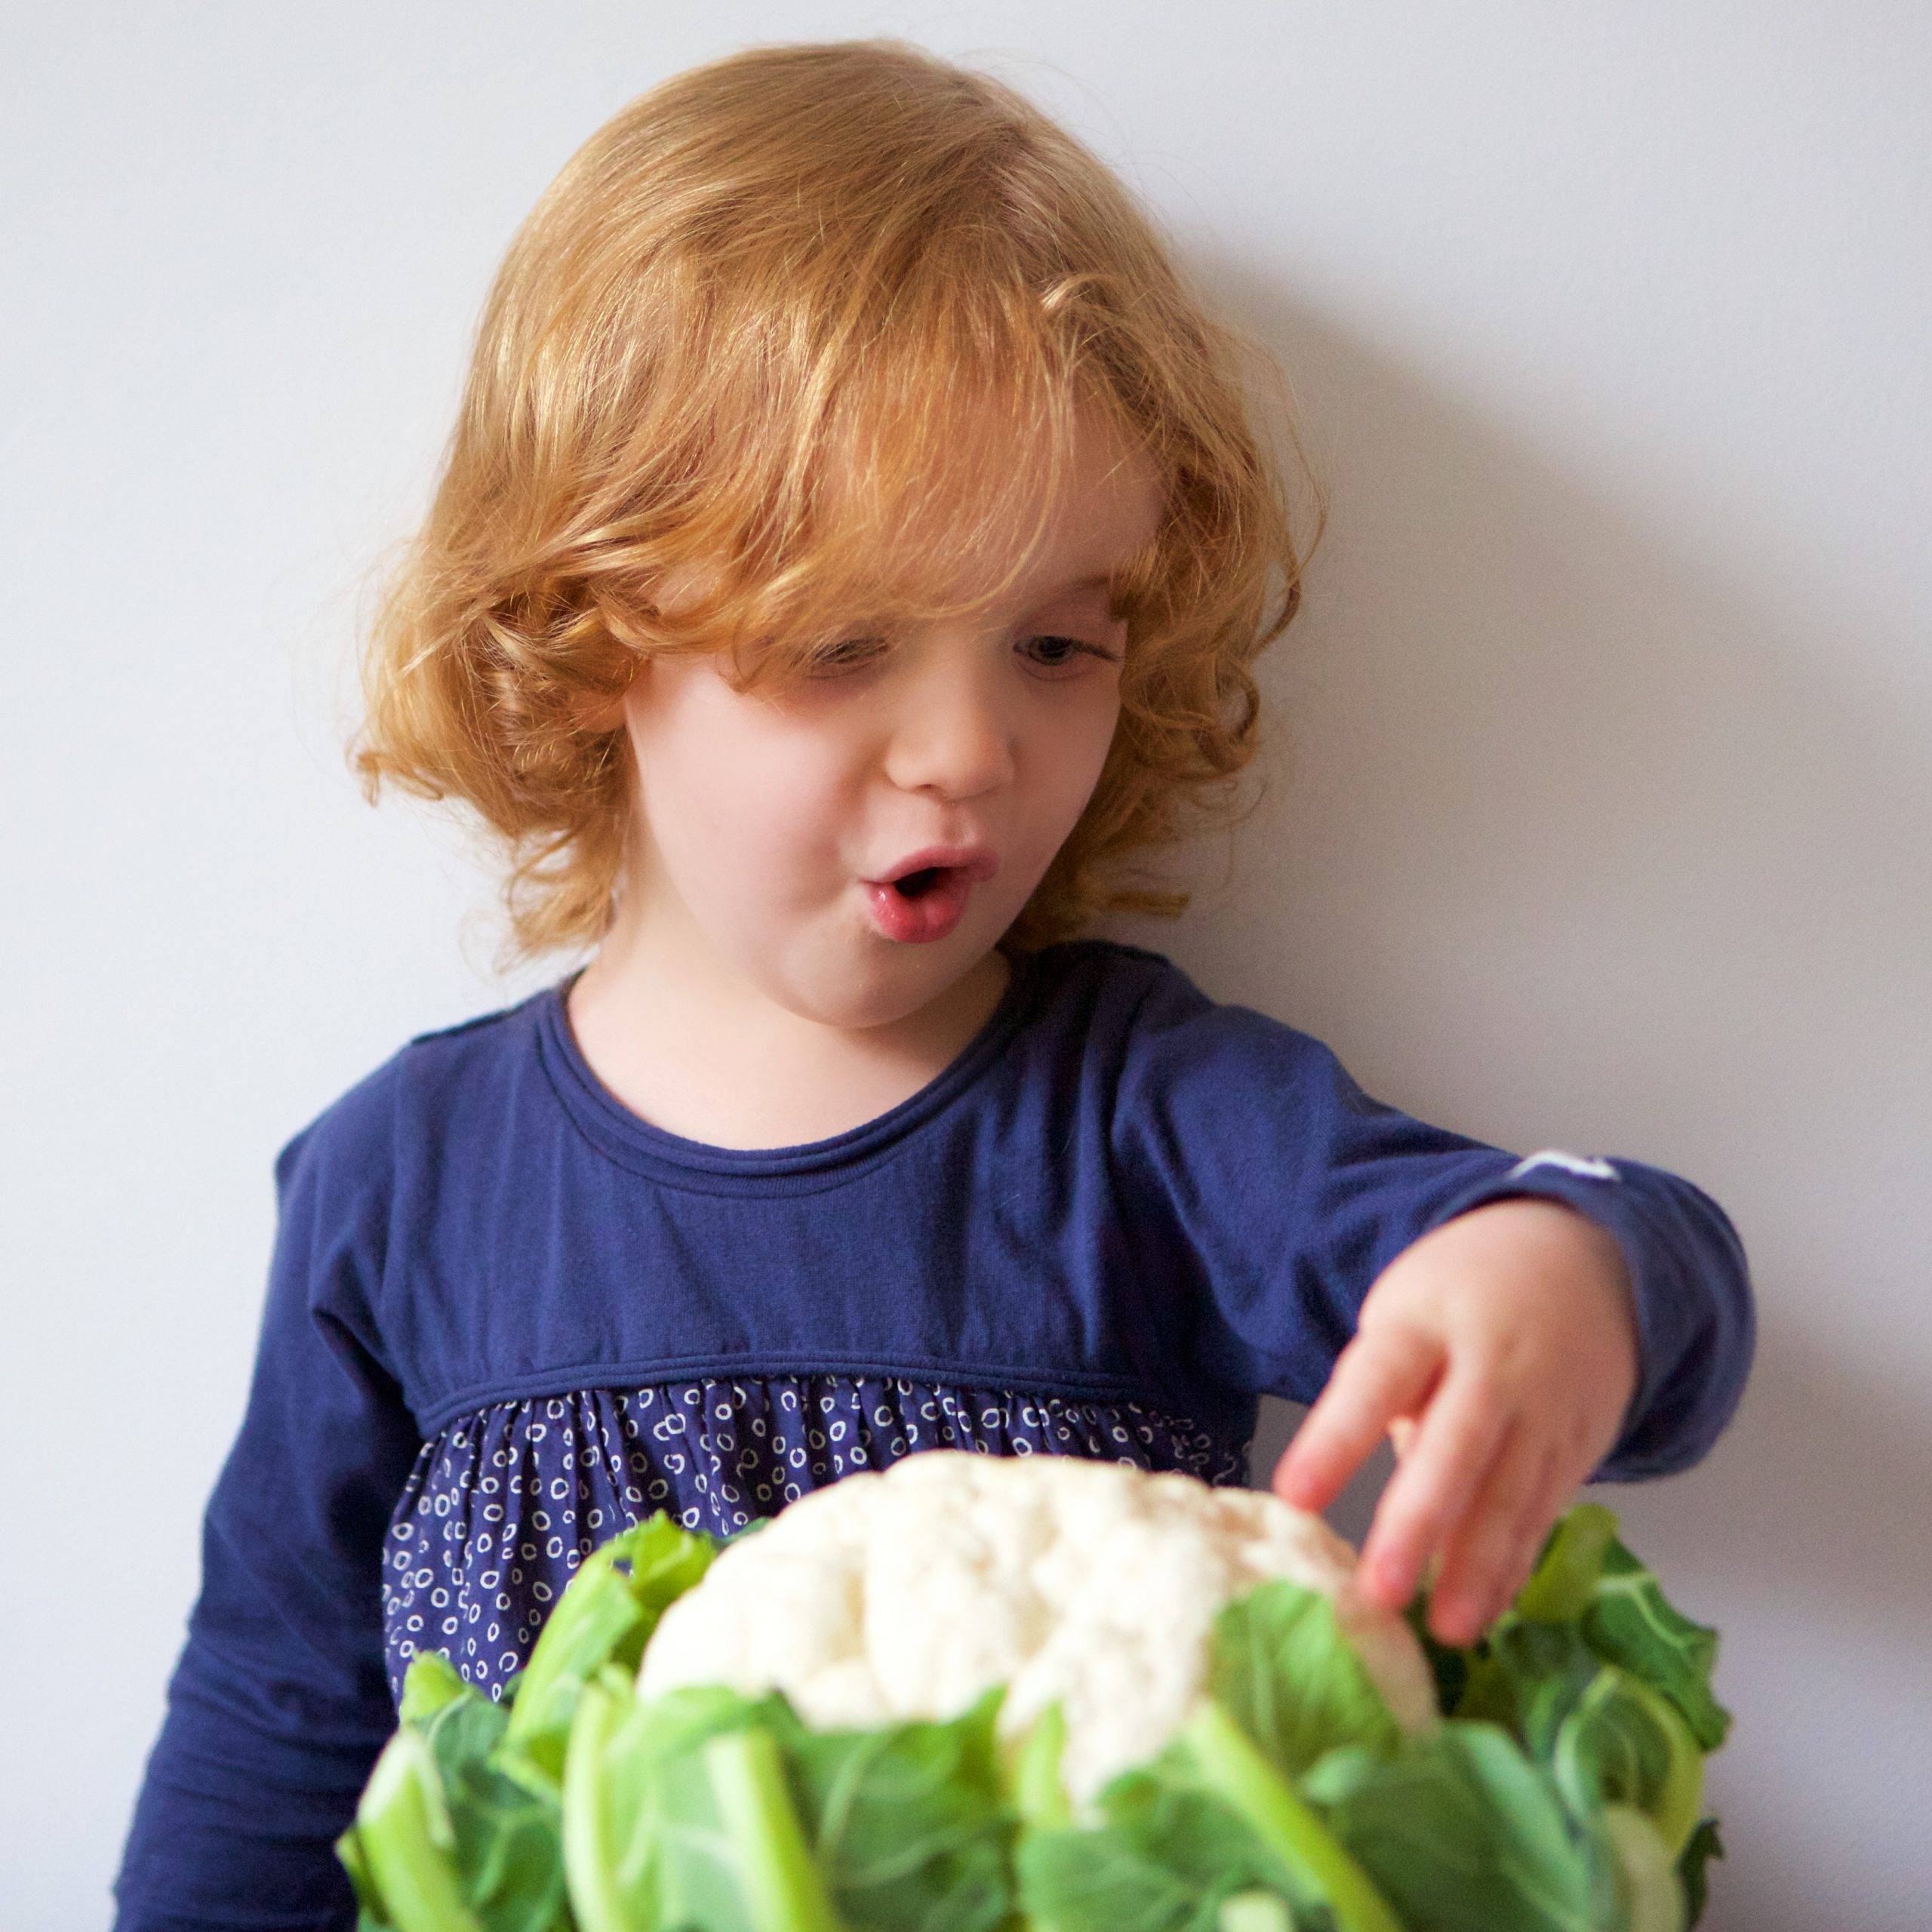 Как приучить ребенка есть овощи / советы и лайфхаки – статья из рубрики "как накормить" на food.ru